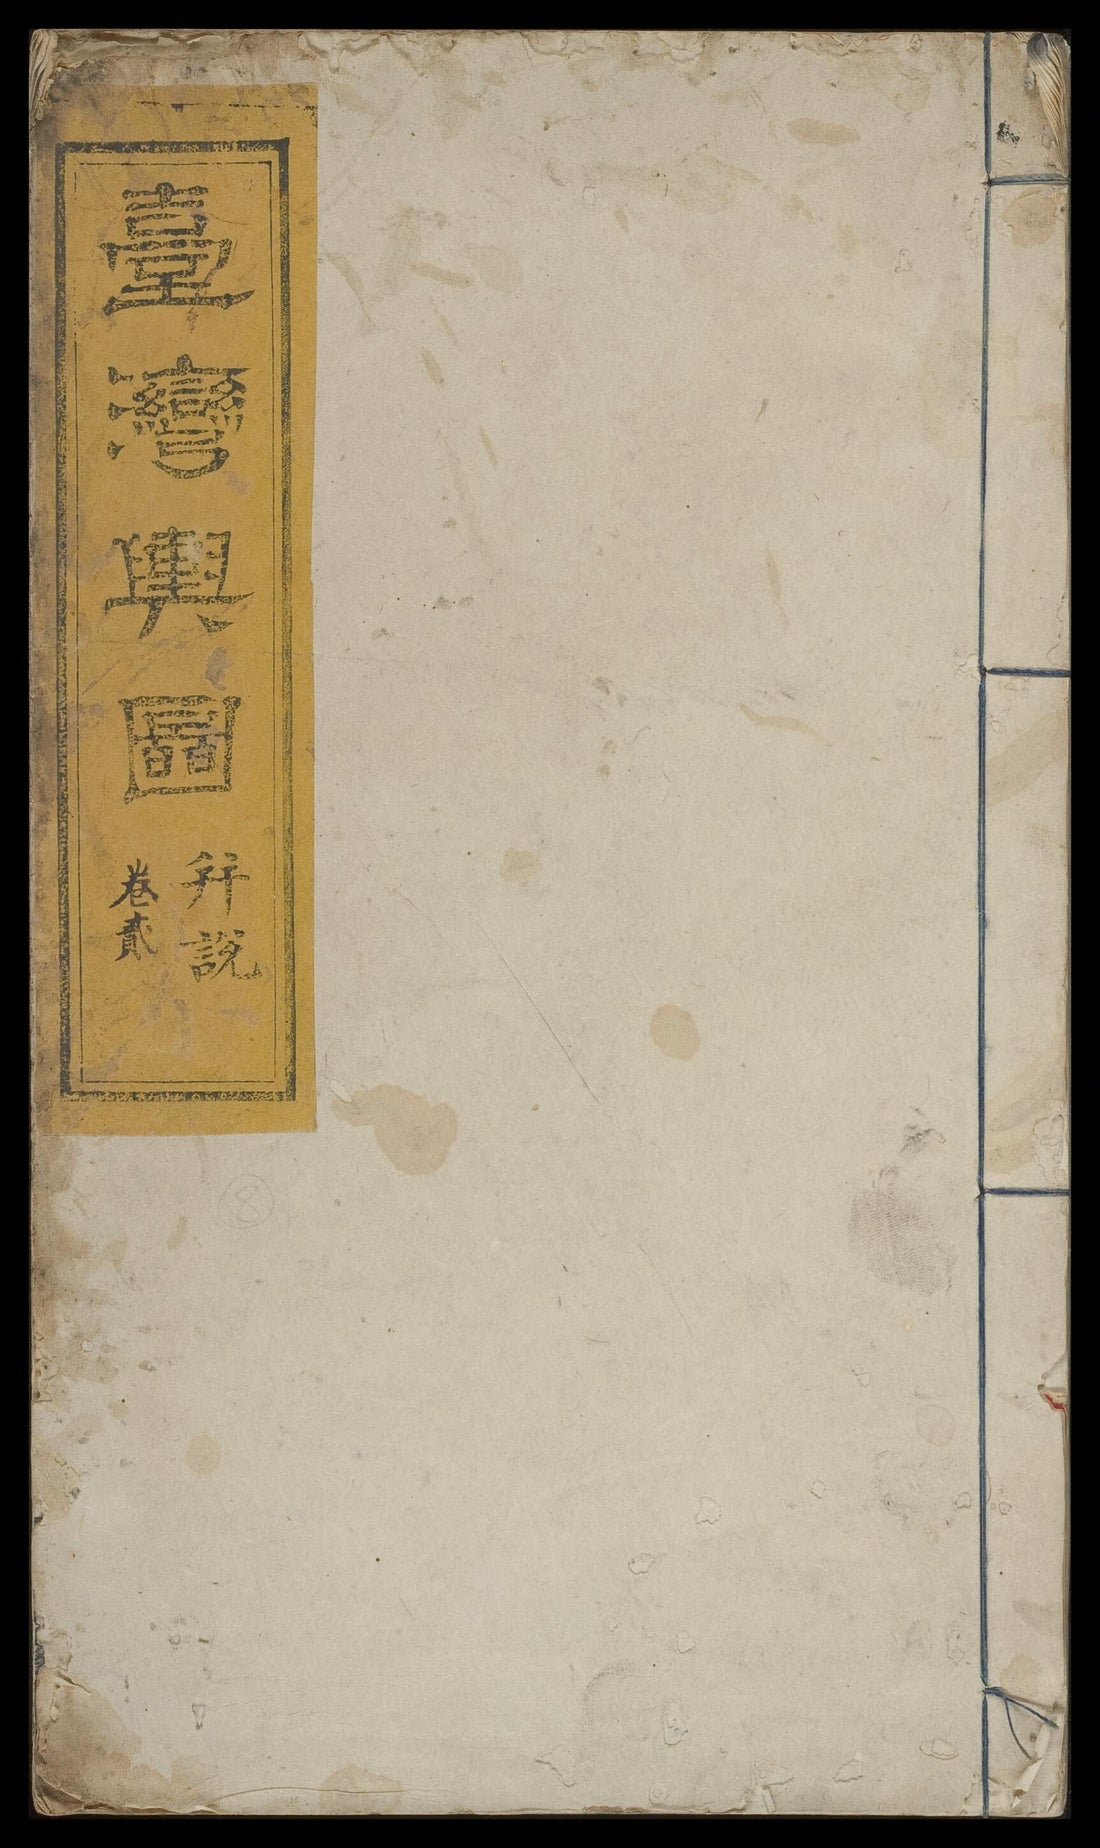 This old map of Quan Tai Yu Tu (全臺輿圖) from 1879 was created by Xianlun Xia, Maoqi Zhou in 1879